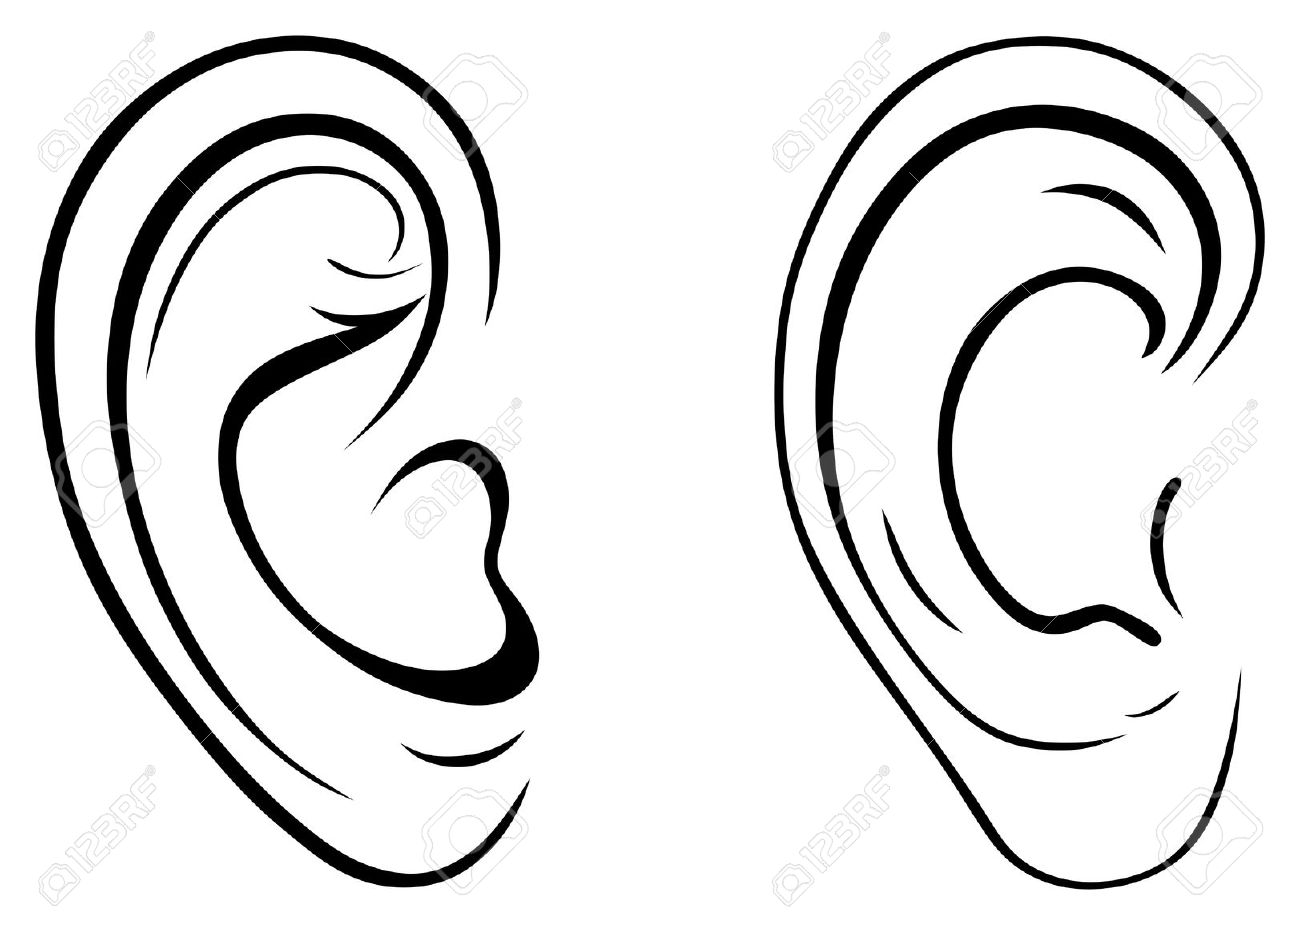 Ear clipart 5